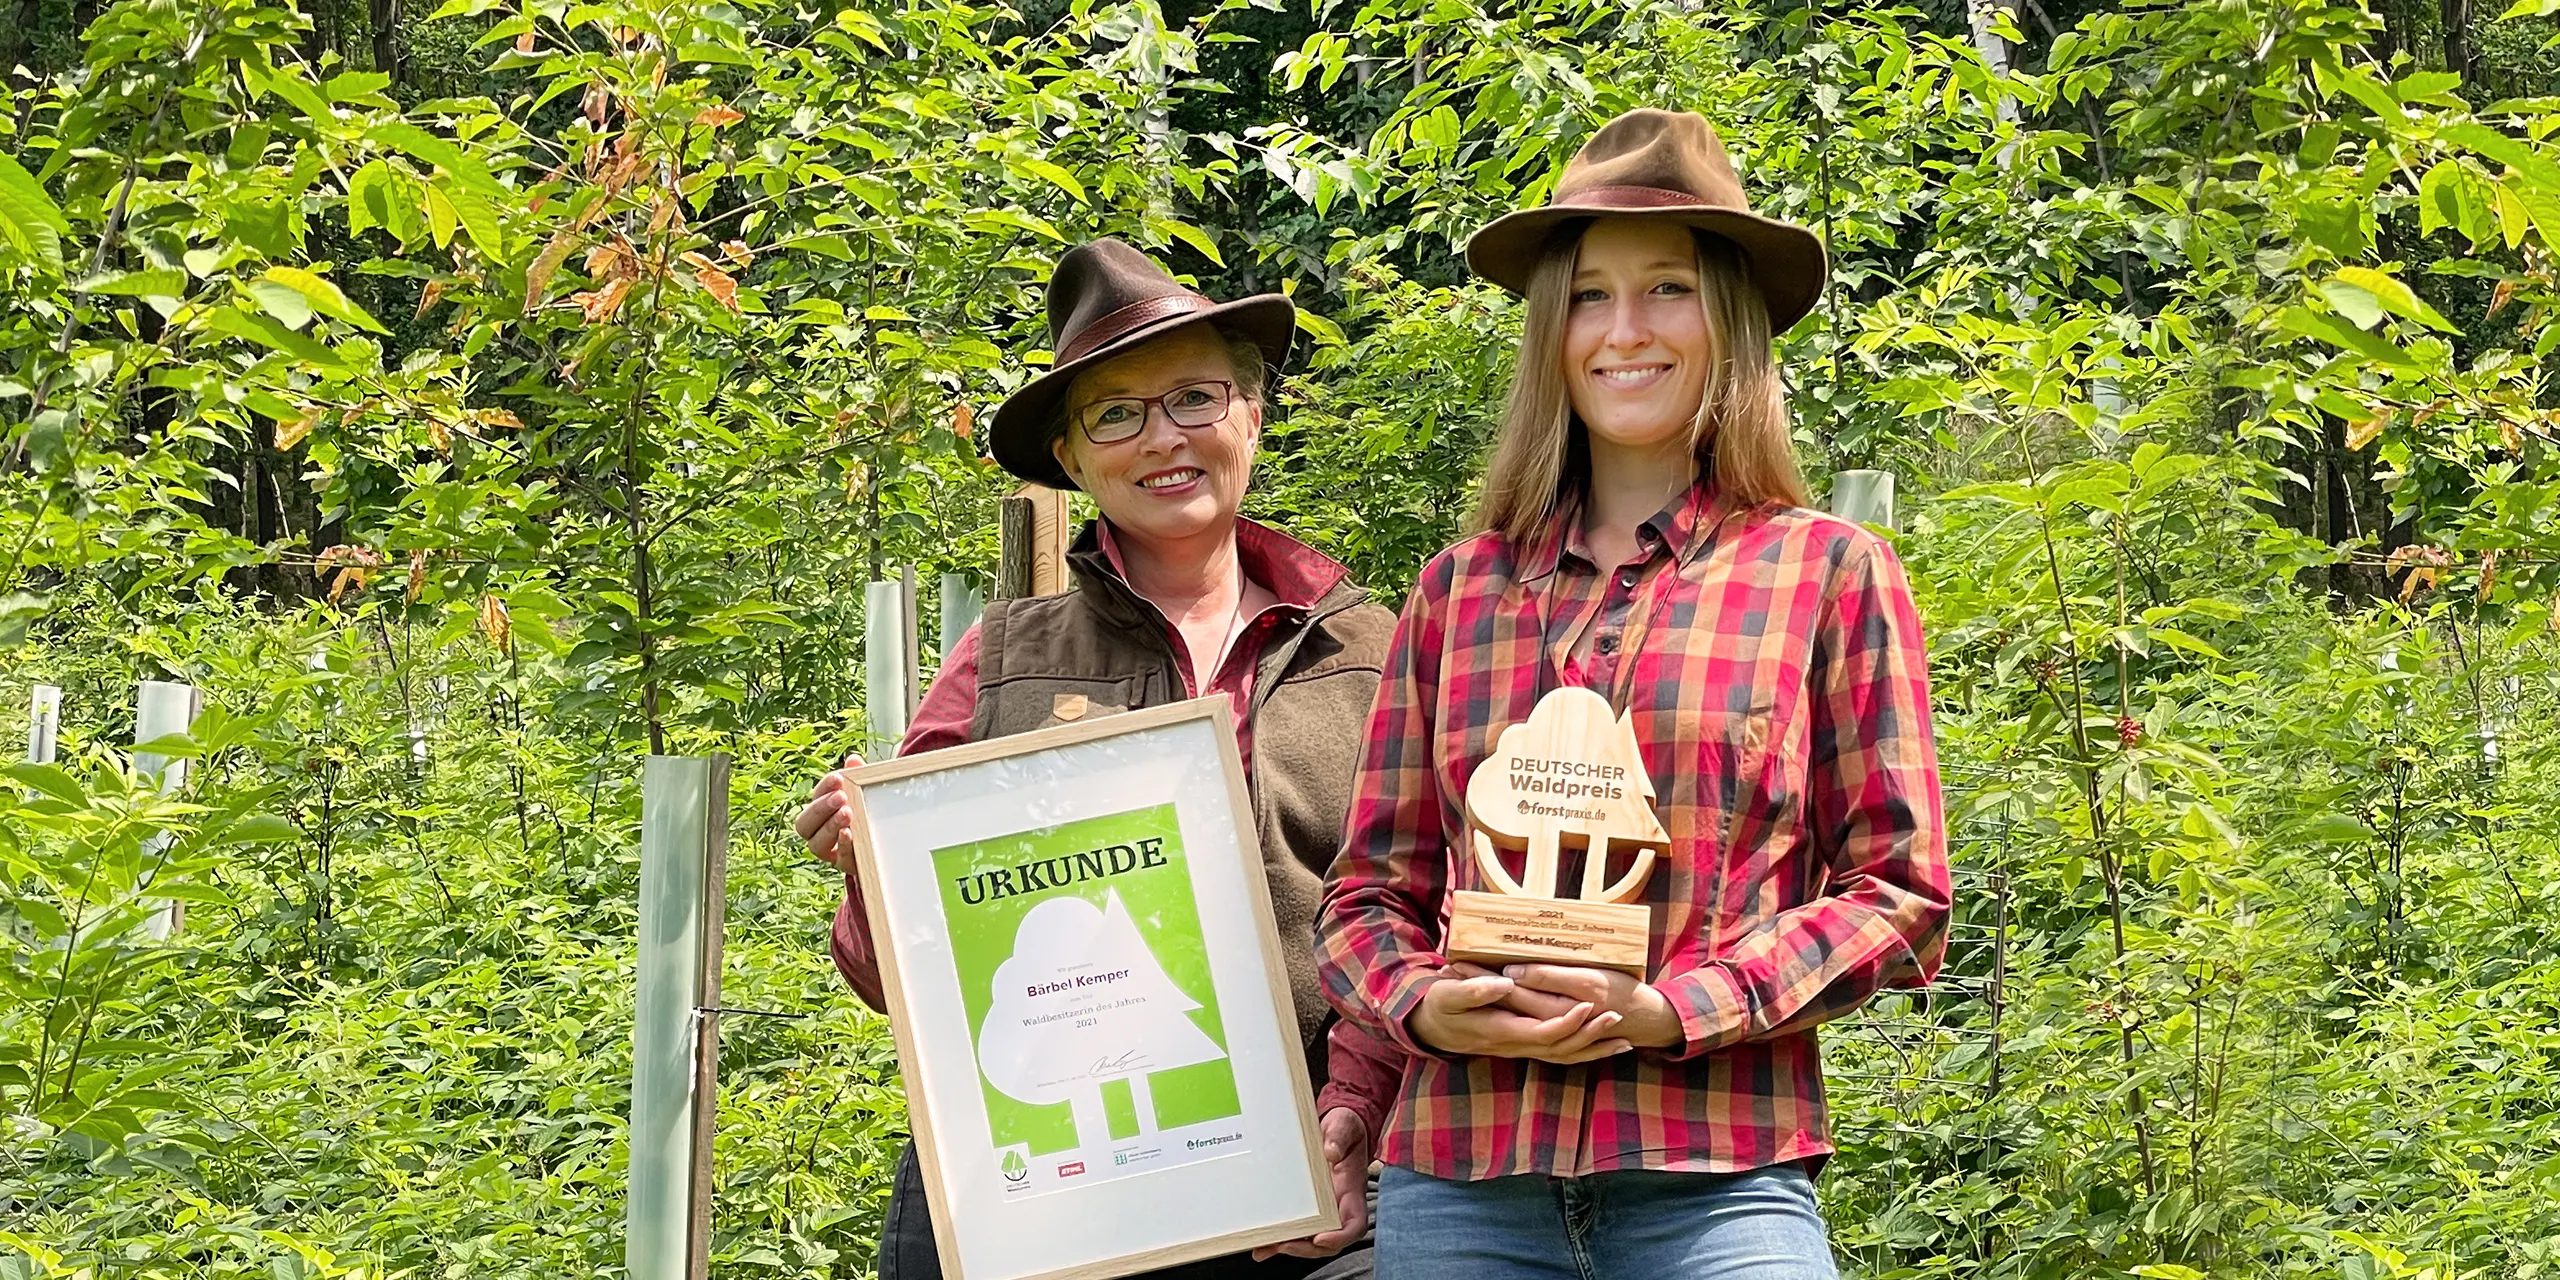 Auszeichnung für Bärbel Kemper und ihr Team mit dem DEUTSCHEN Waldpreis 2021.